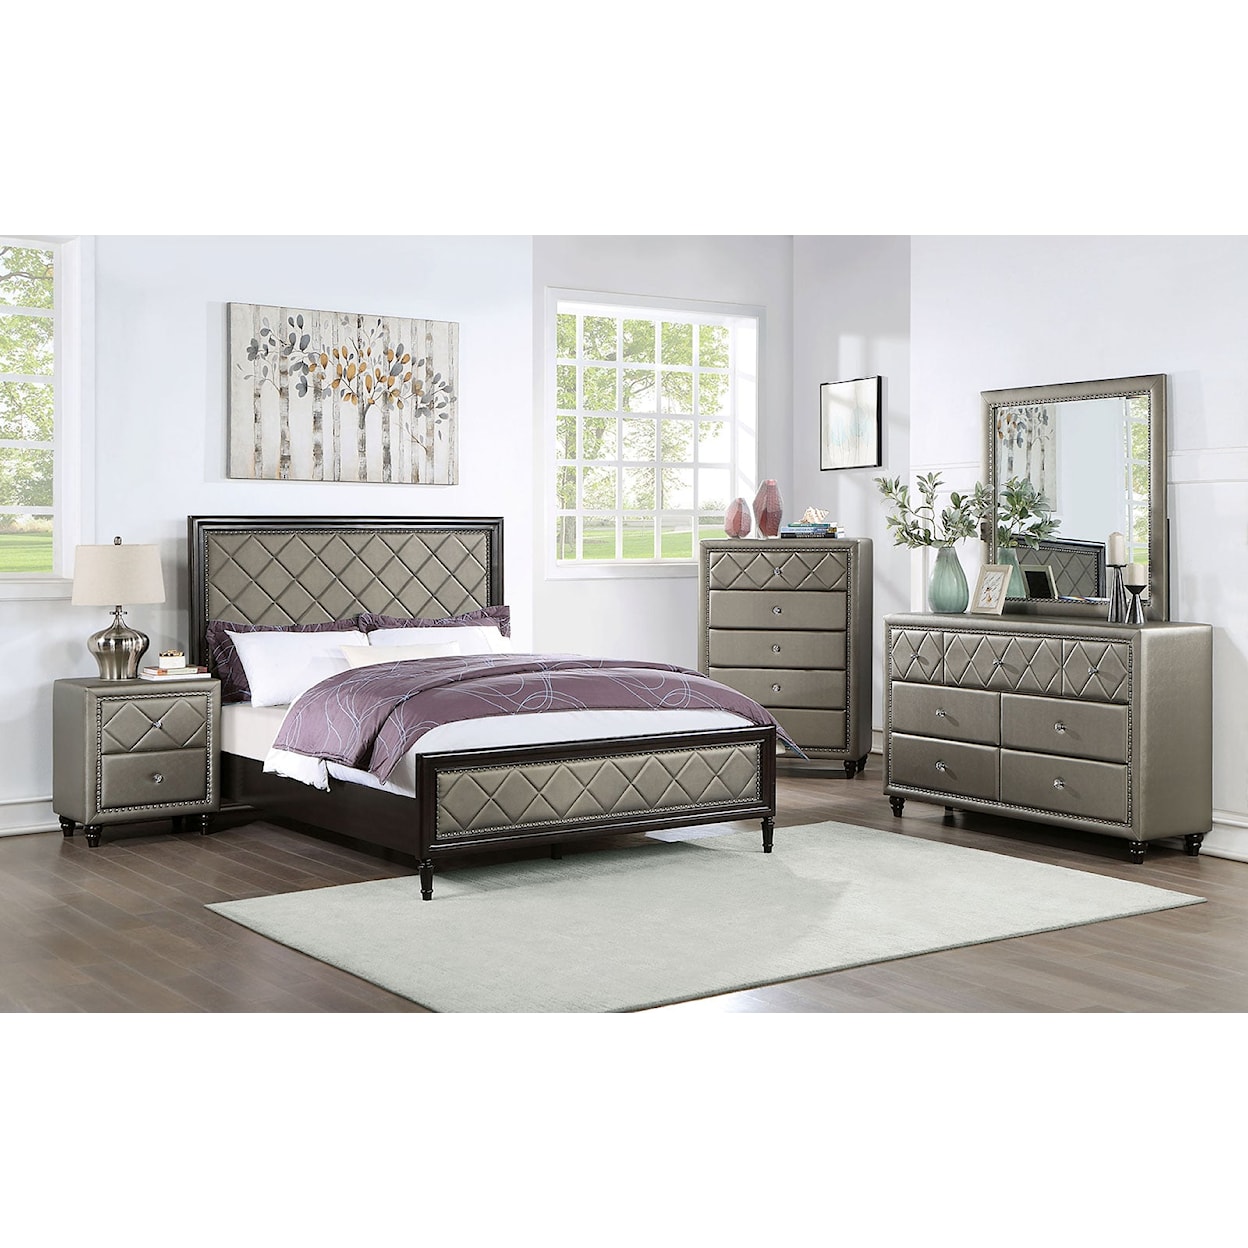 Furniture of America Xandria 4-Piece Queen Panel Bedroom Set